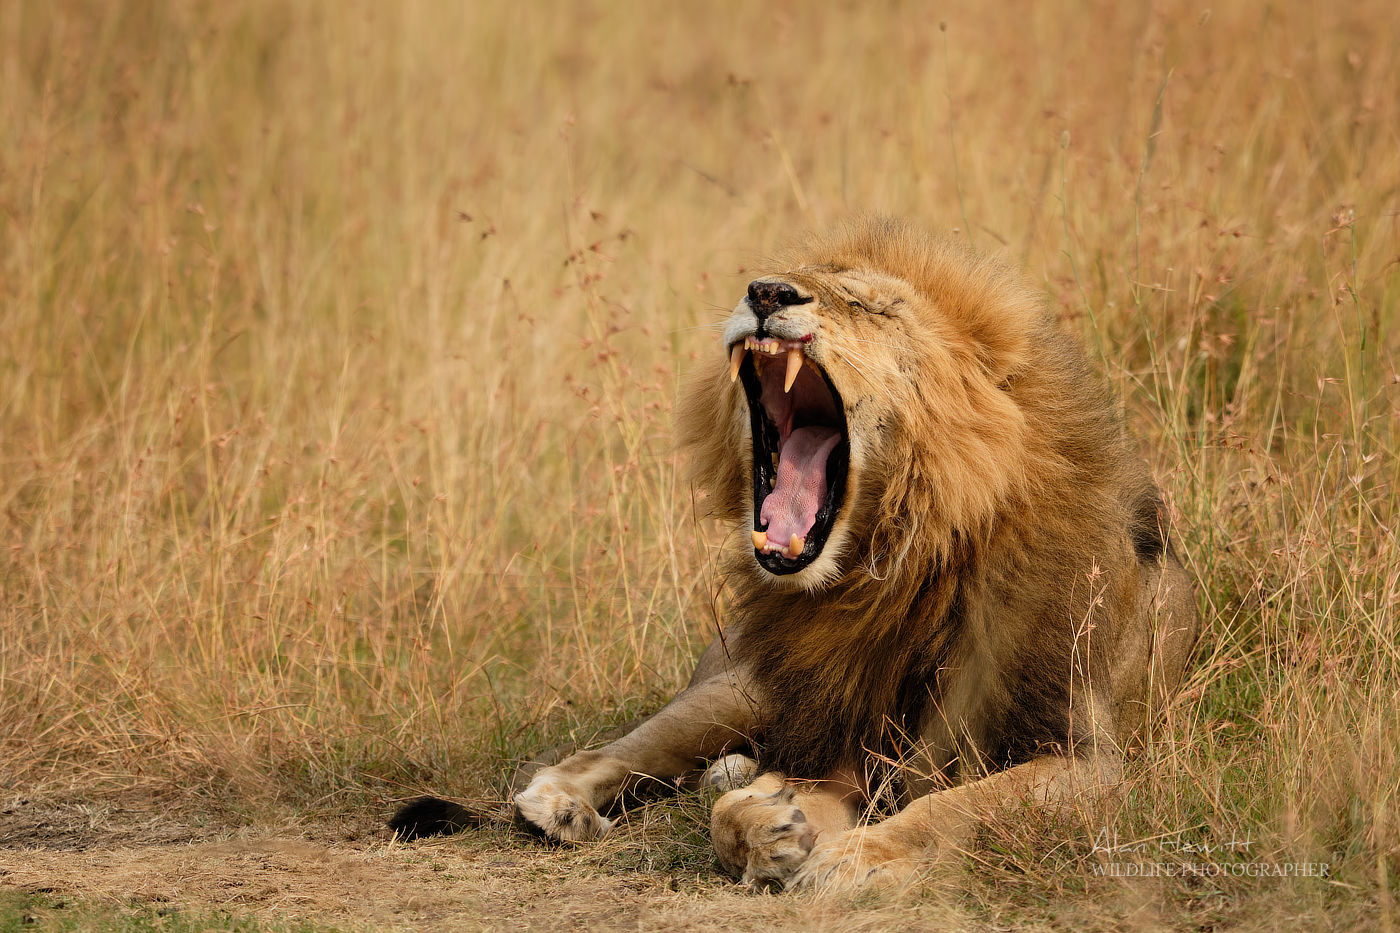 Lion Maasai Mara African Photography Safari Alan Hewitt